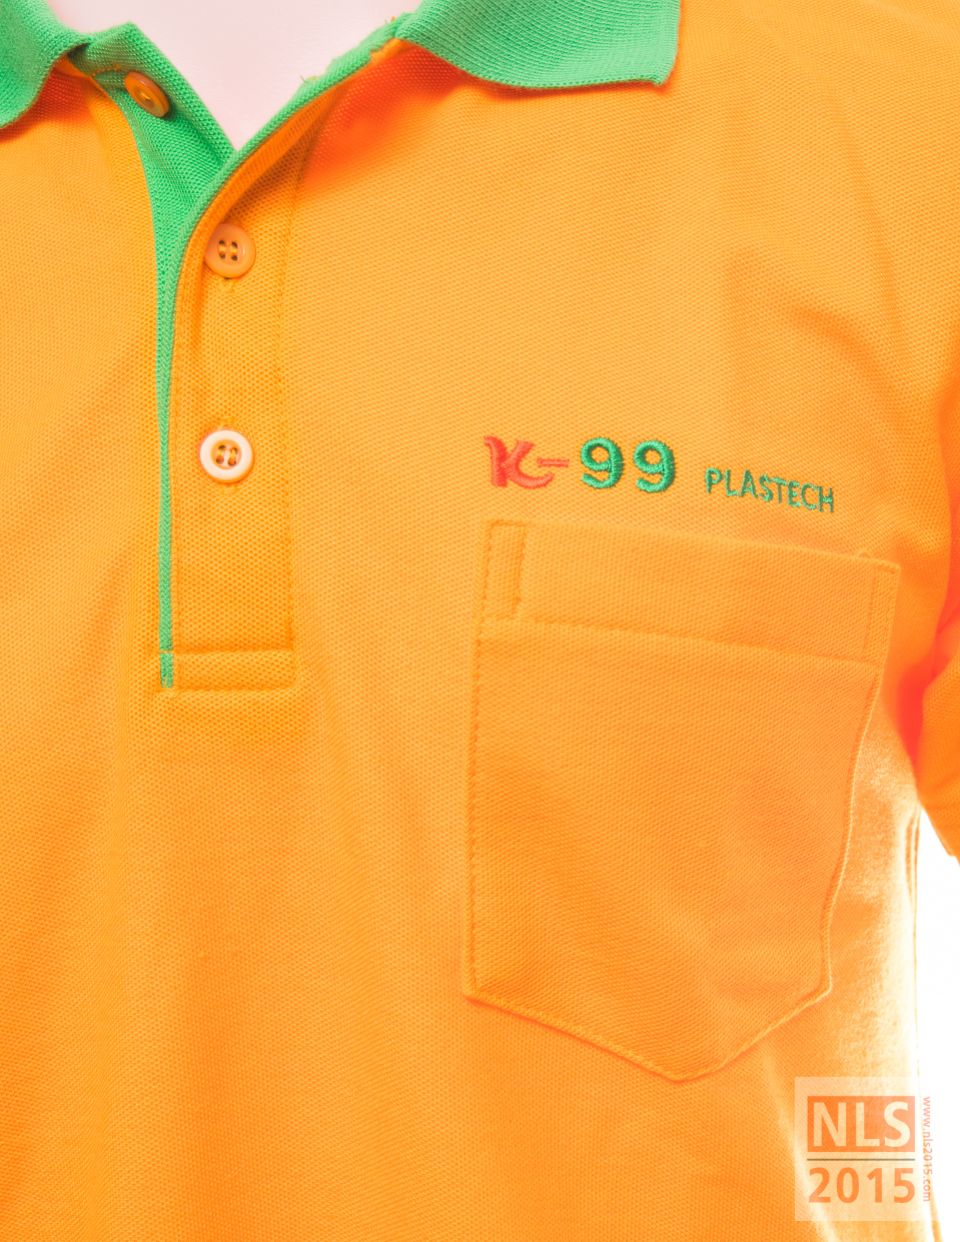 แบบเสื้อโปโล K-99 PLASTECH / นลินสิริแหลมฉบัง รับตัดเสื้อโปโลตามสั่ง พร้อมปักโลโก้ ปักตัวอักษรรูปที่ 